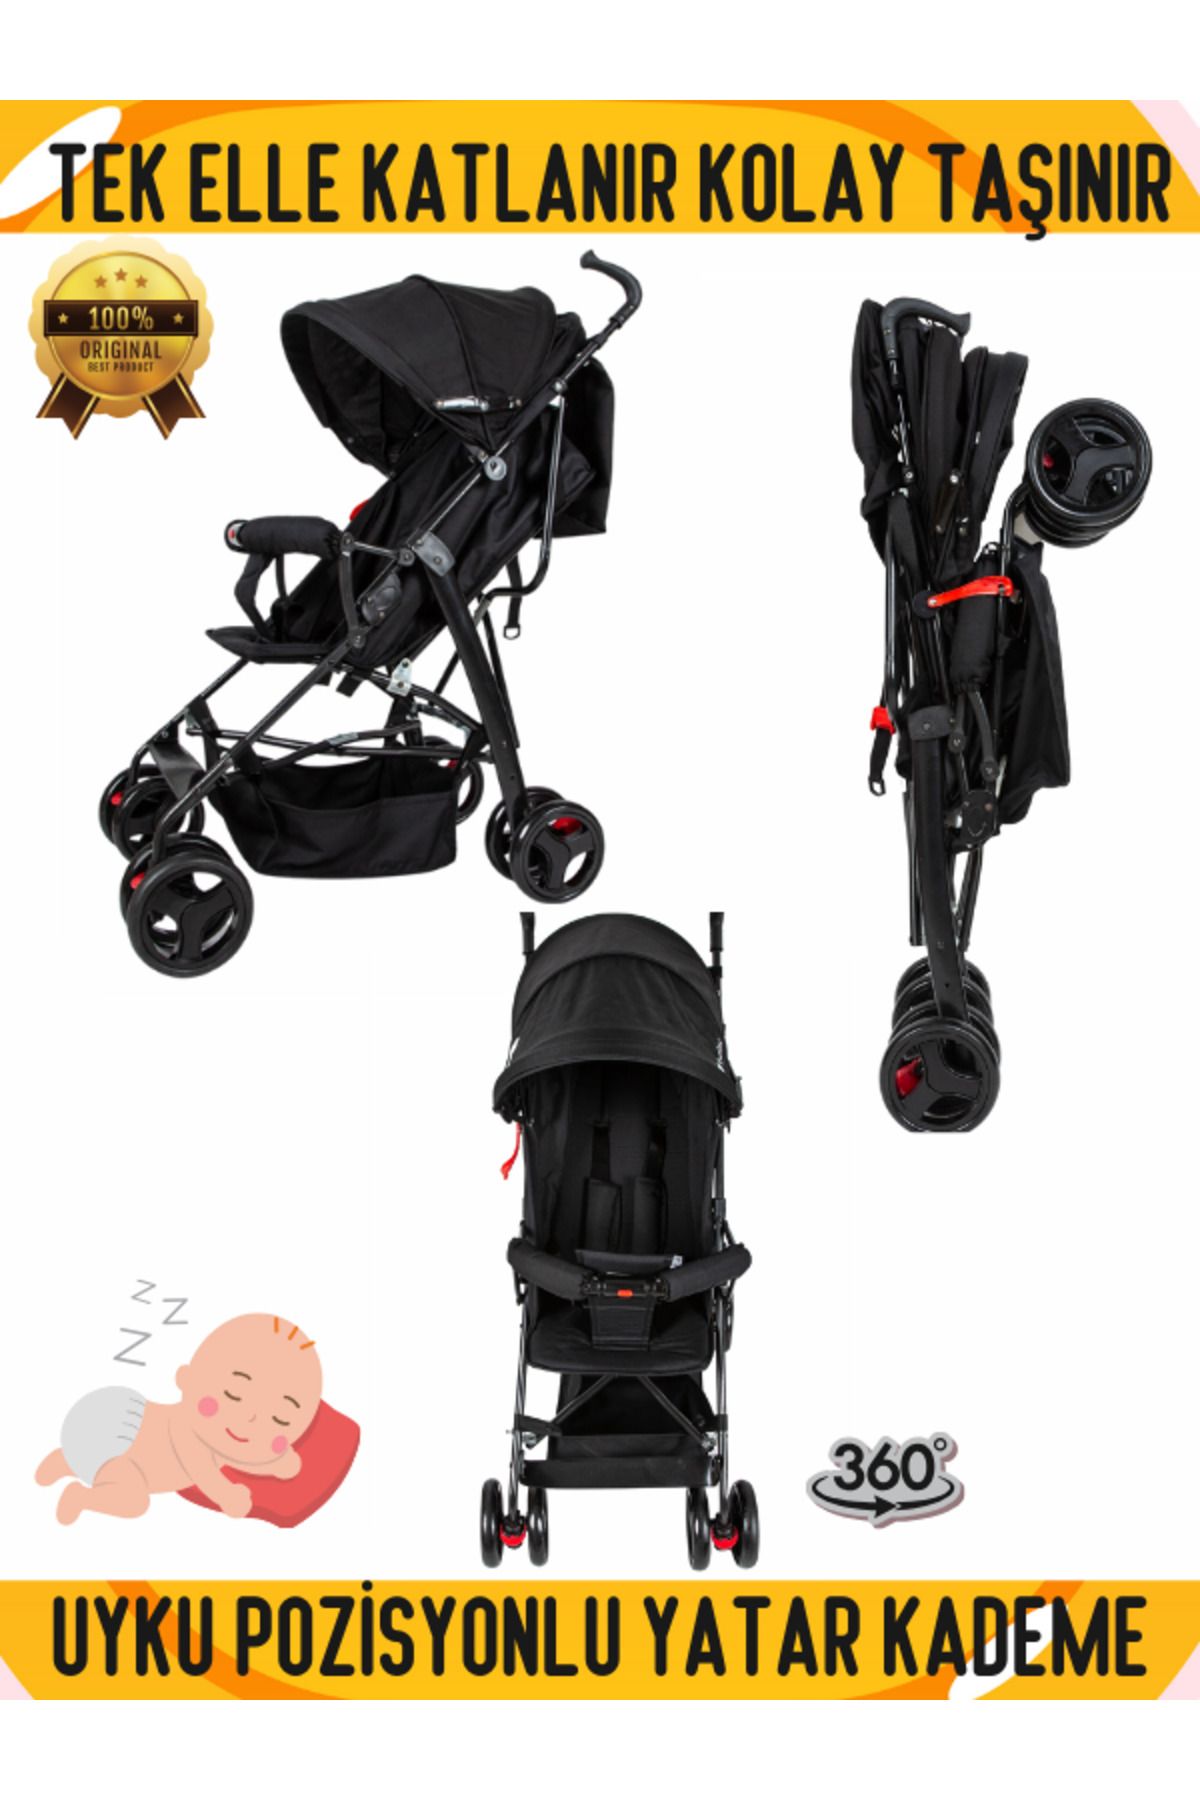 AYVELLA Tek Elle Katlanır Kolay Taşınır Baston Bebek Arabası Yatar Uyku Pozisyonlu Sepetli AYVELLA Lüx Model